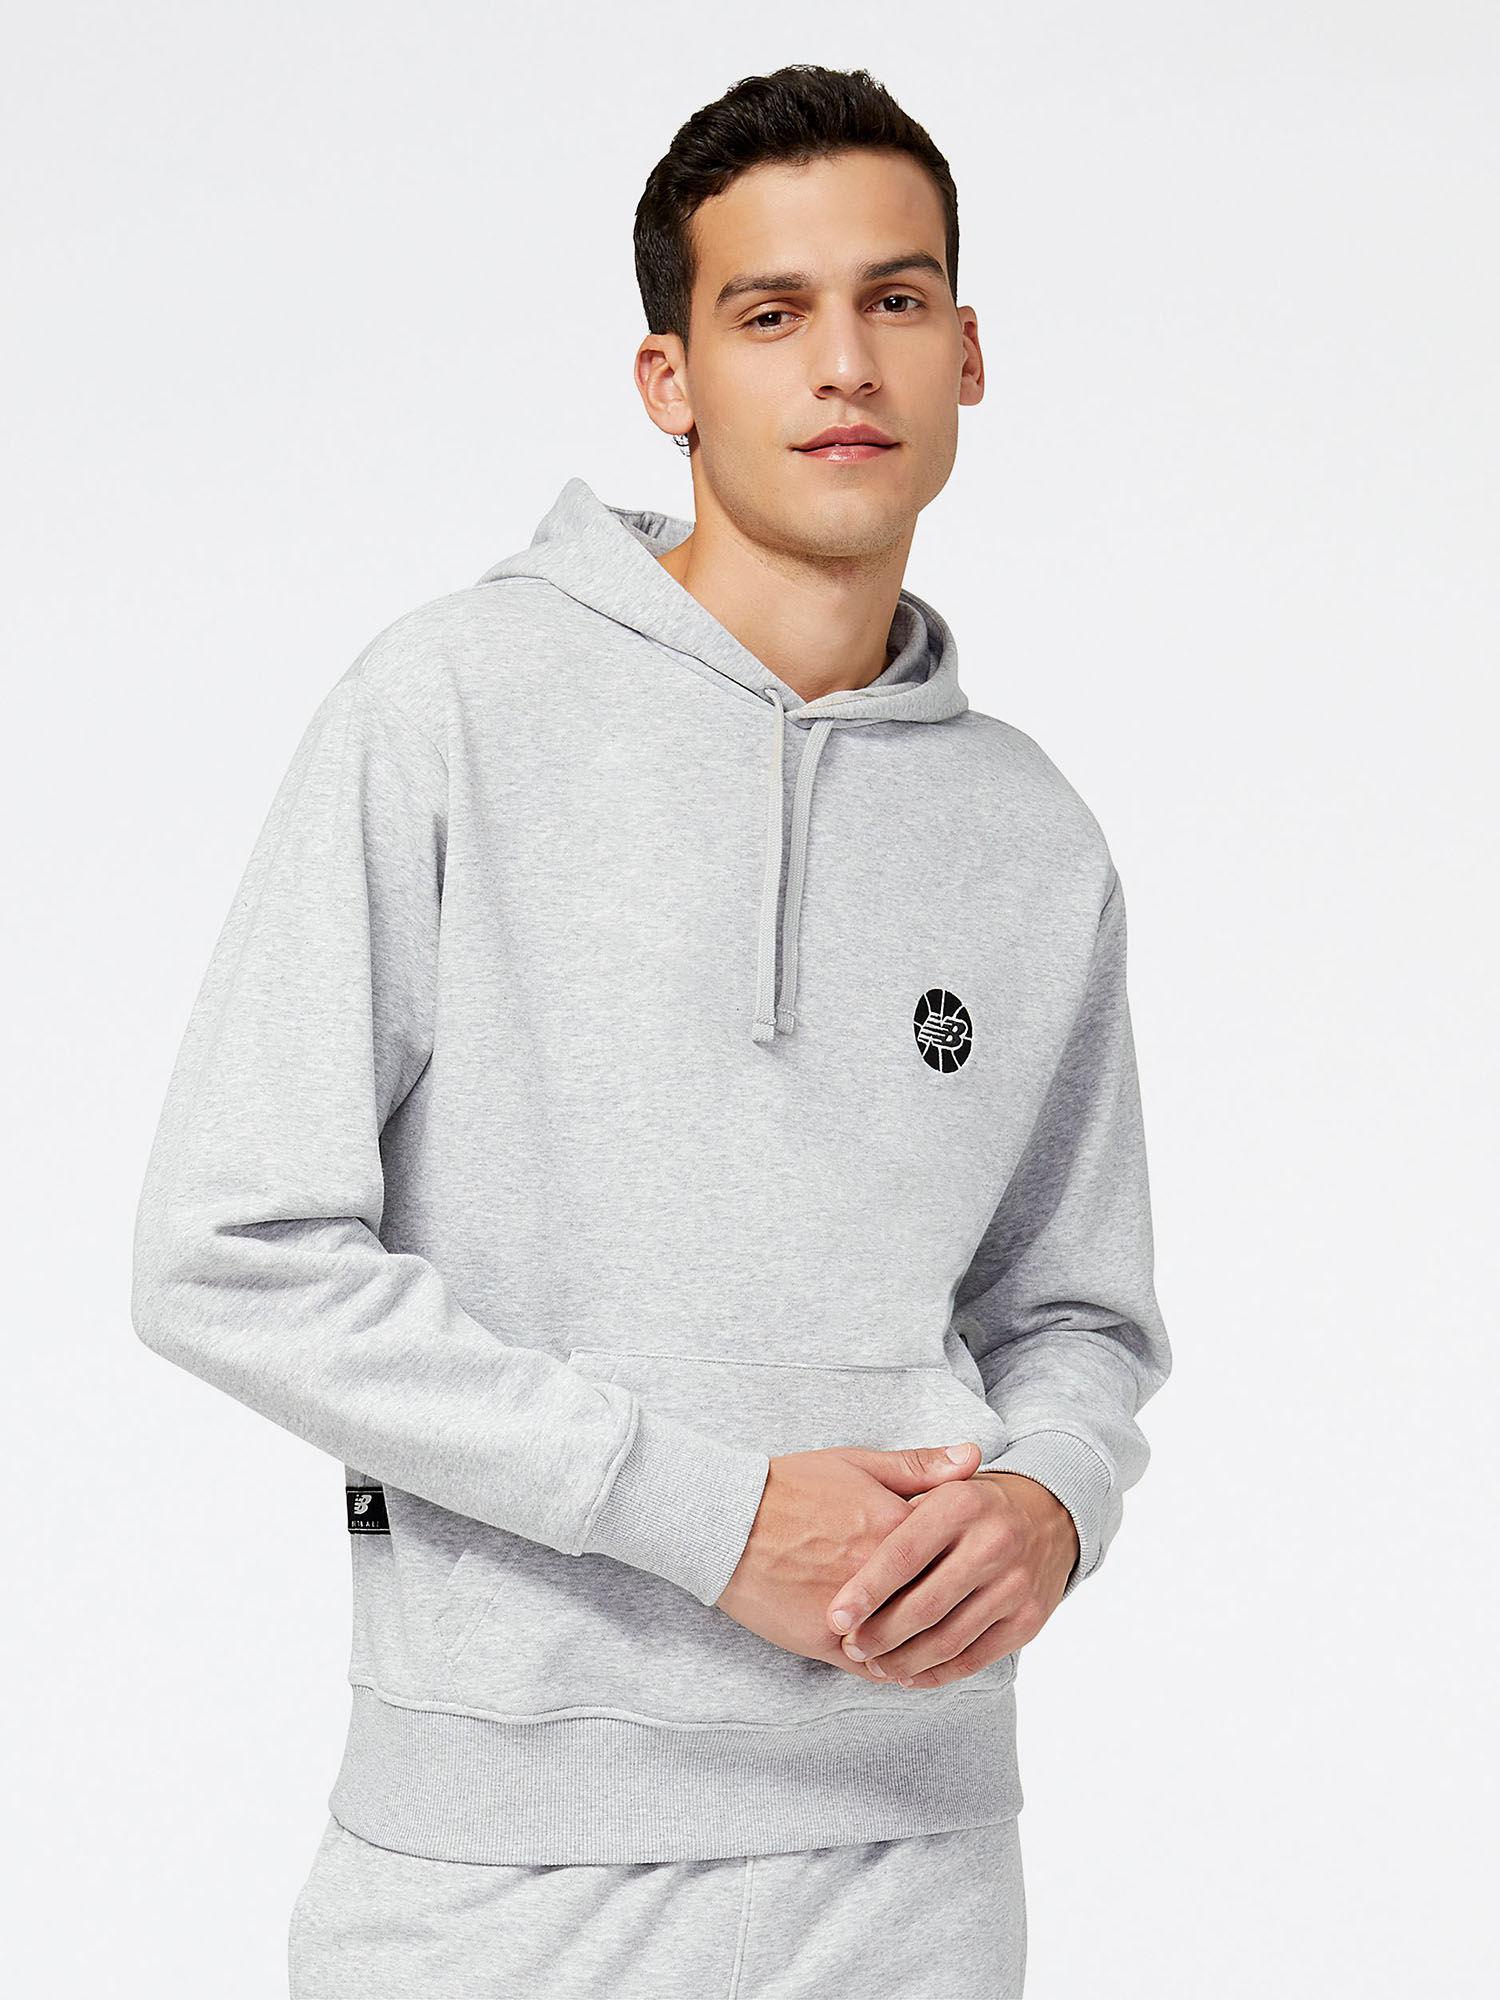 mens athletic grey hoodie